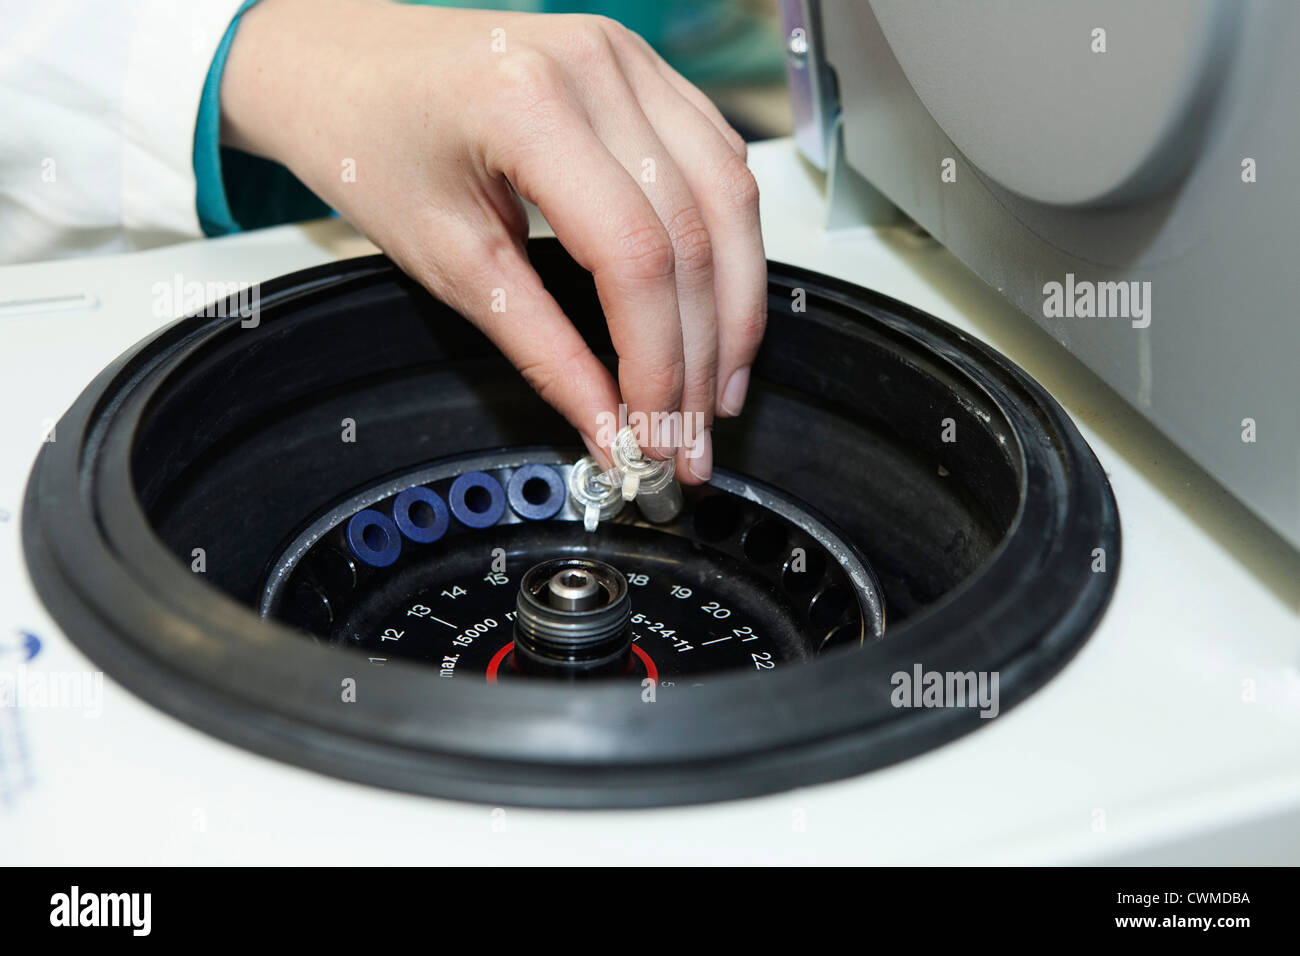 Germany, Bavaria, Munich, les tubes à essai de chargement en petite centrifugeuse Banque D'Images